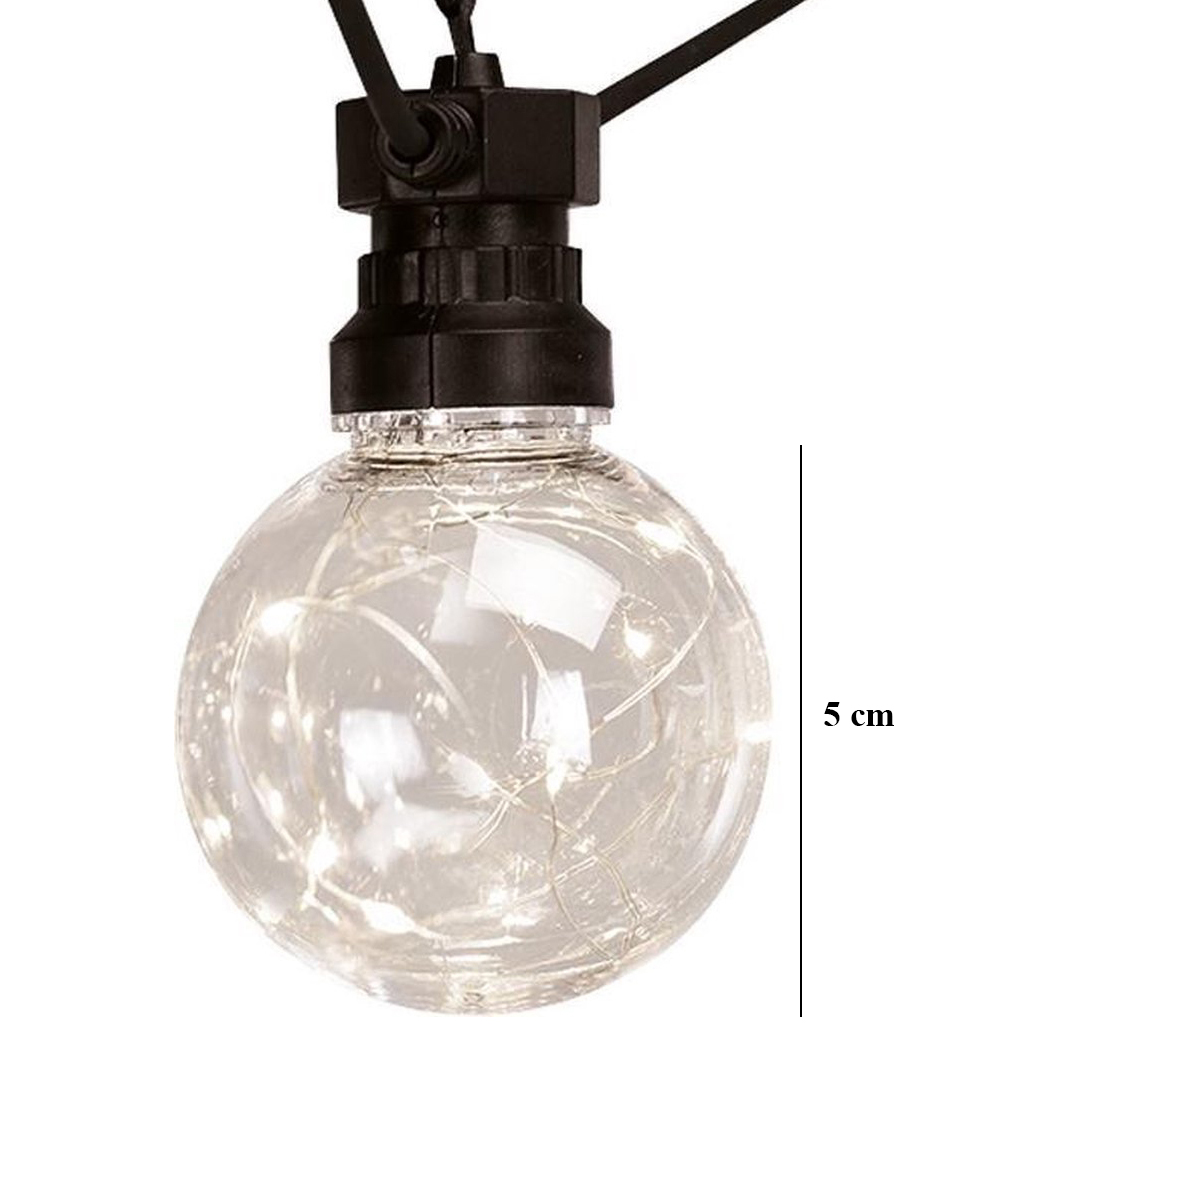 Lichtsnoer 2 x 7.5 m - 2 x 10 Lampjes - Binnen/Buiten Verlichting - Feestverlichting 50Led - Warm Wit